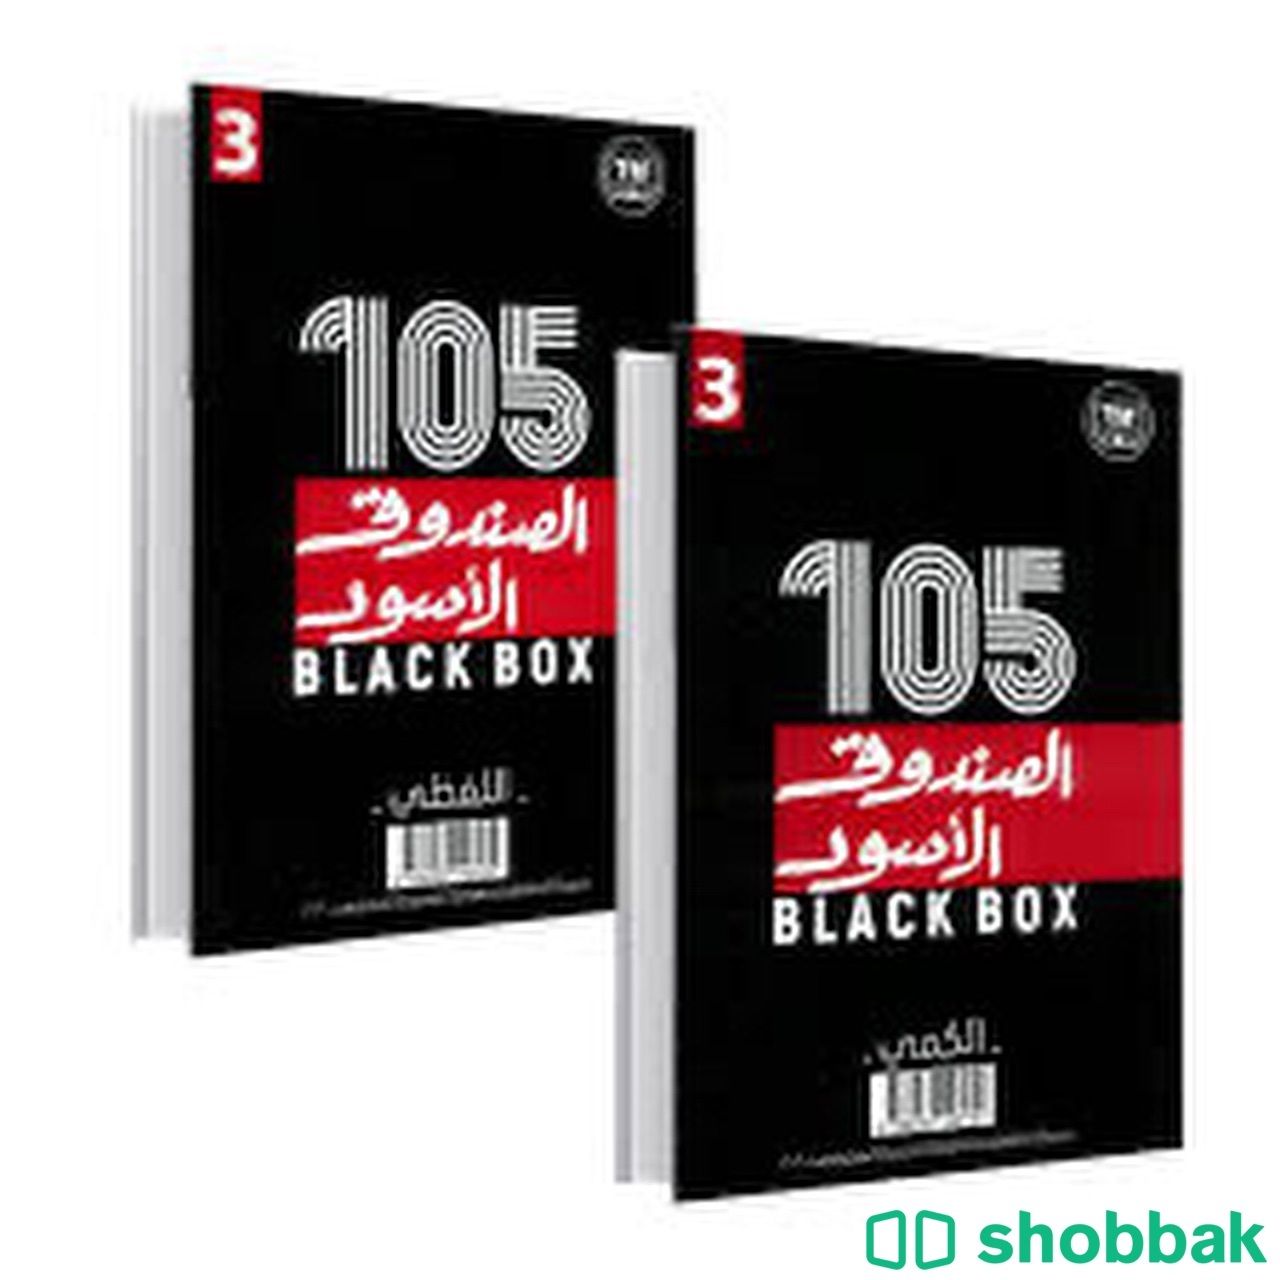 كتاب الصندوق الاسود للقدرات  Shobbak Saudi Arabia